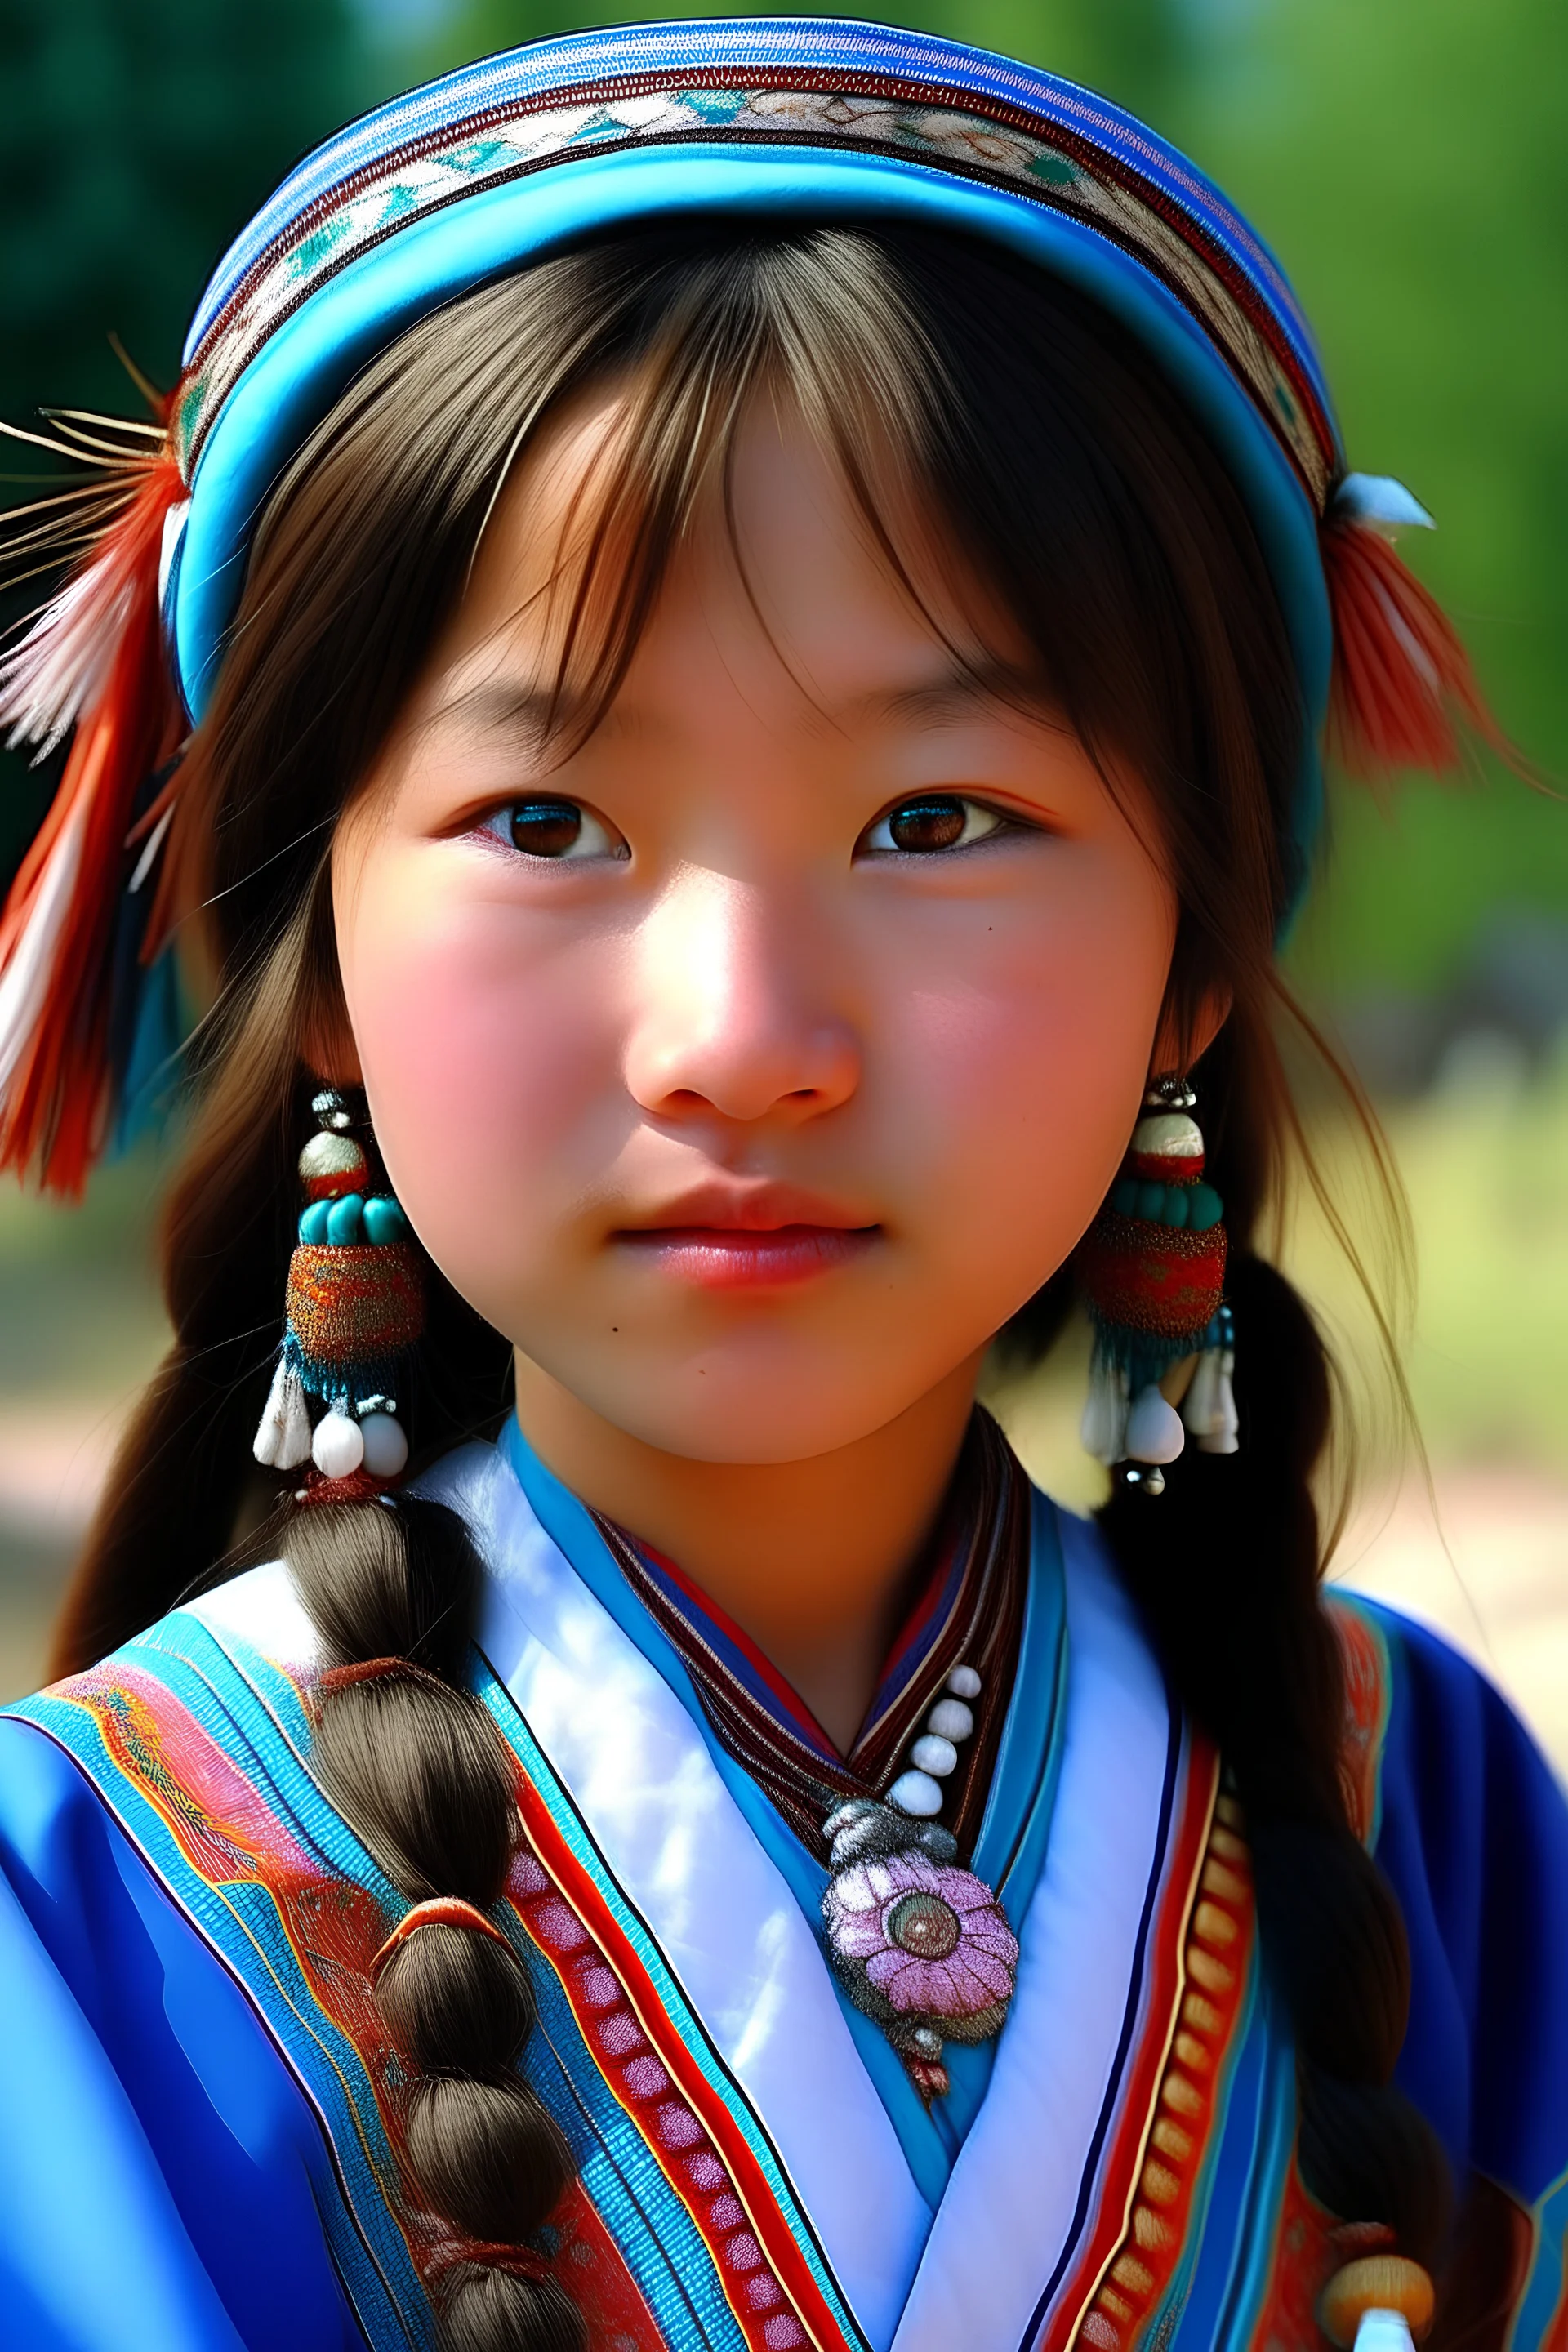 kazakh girl